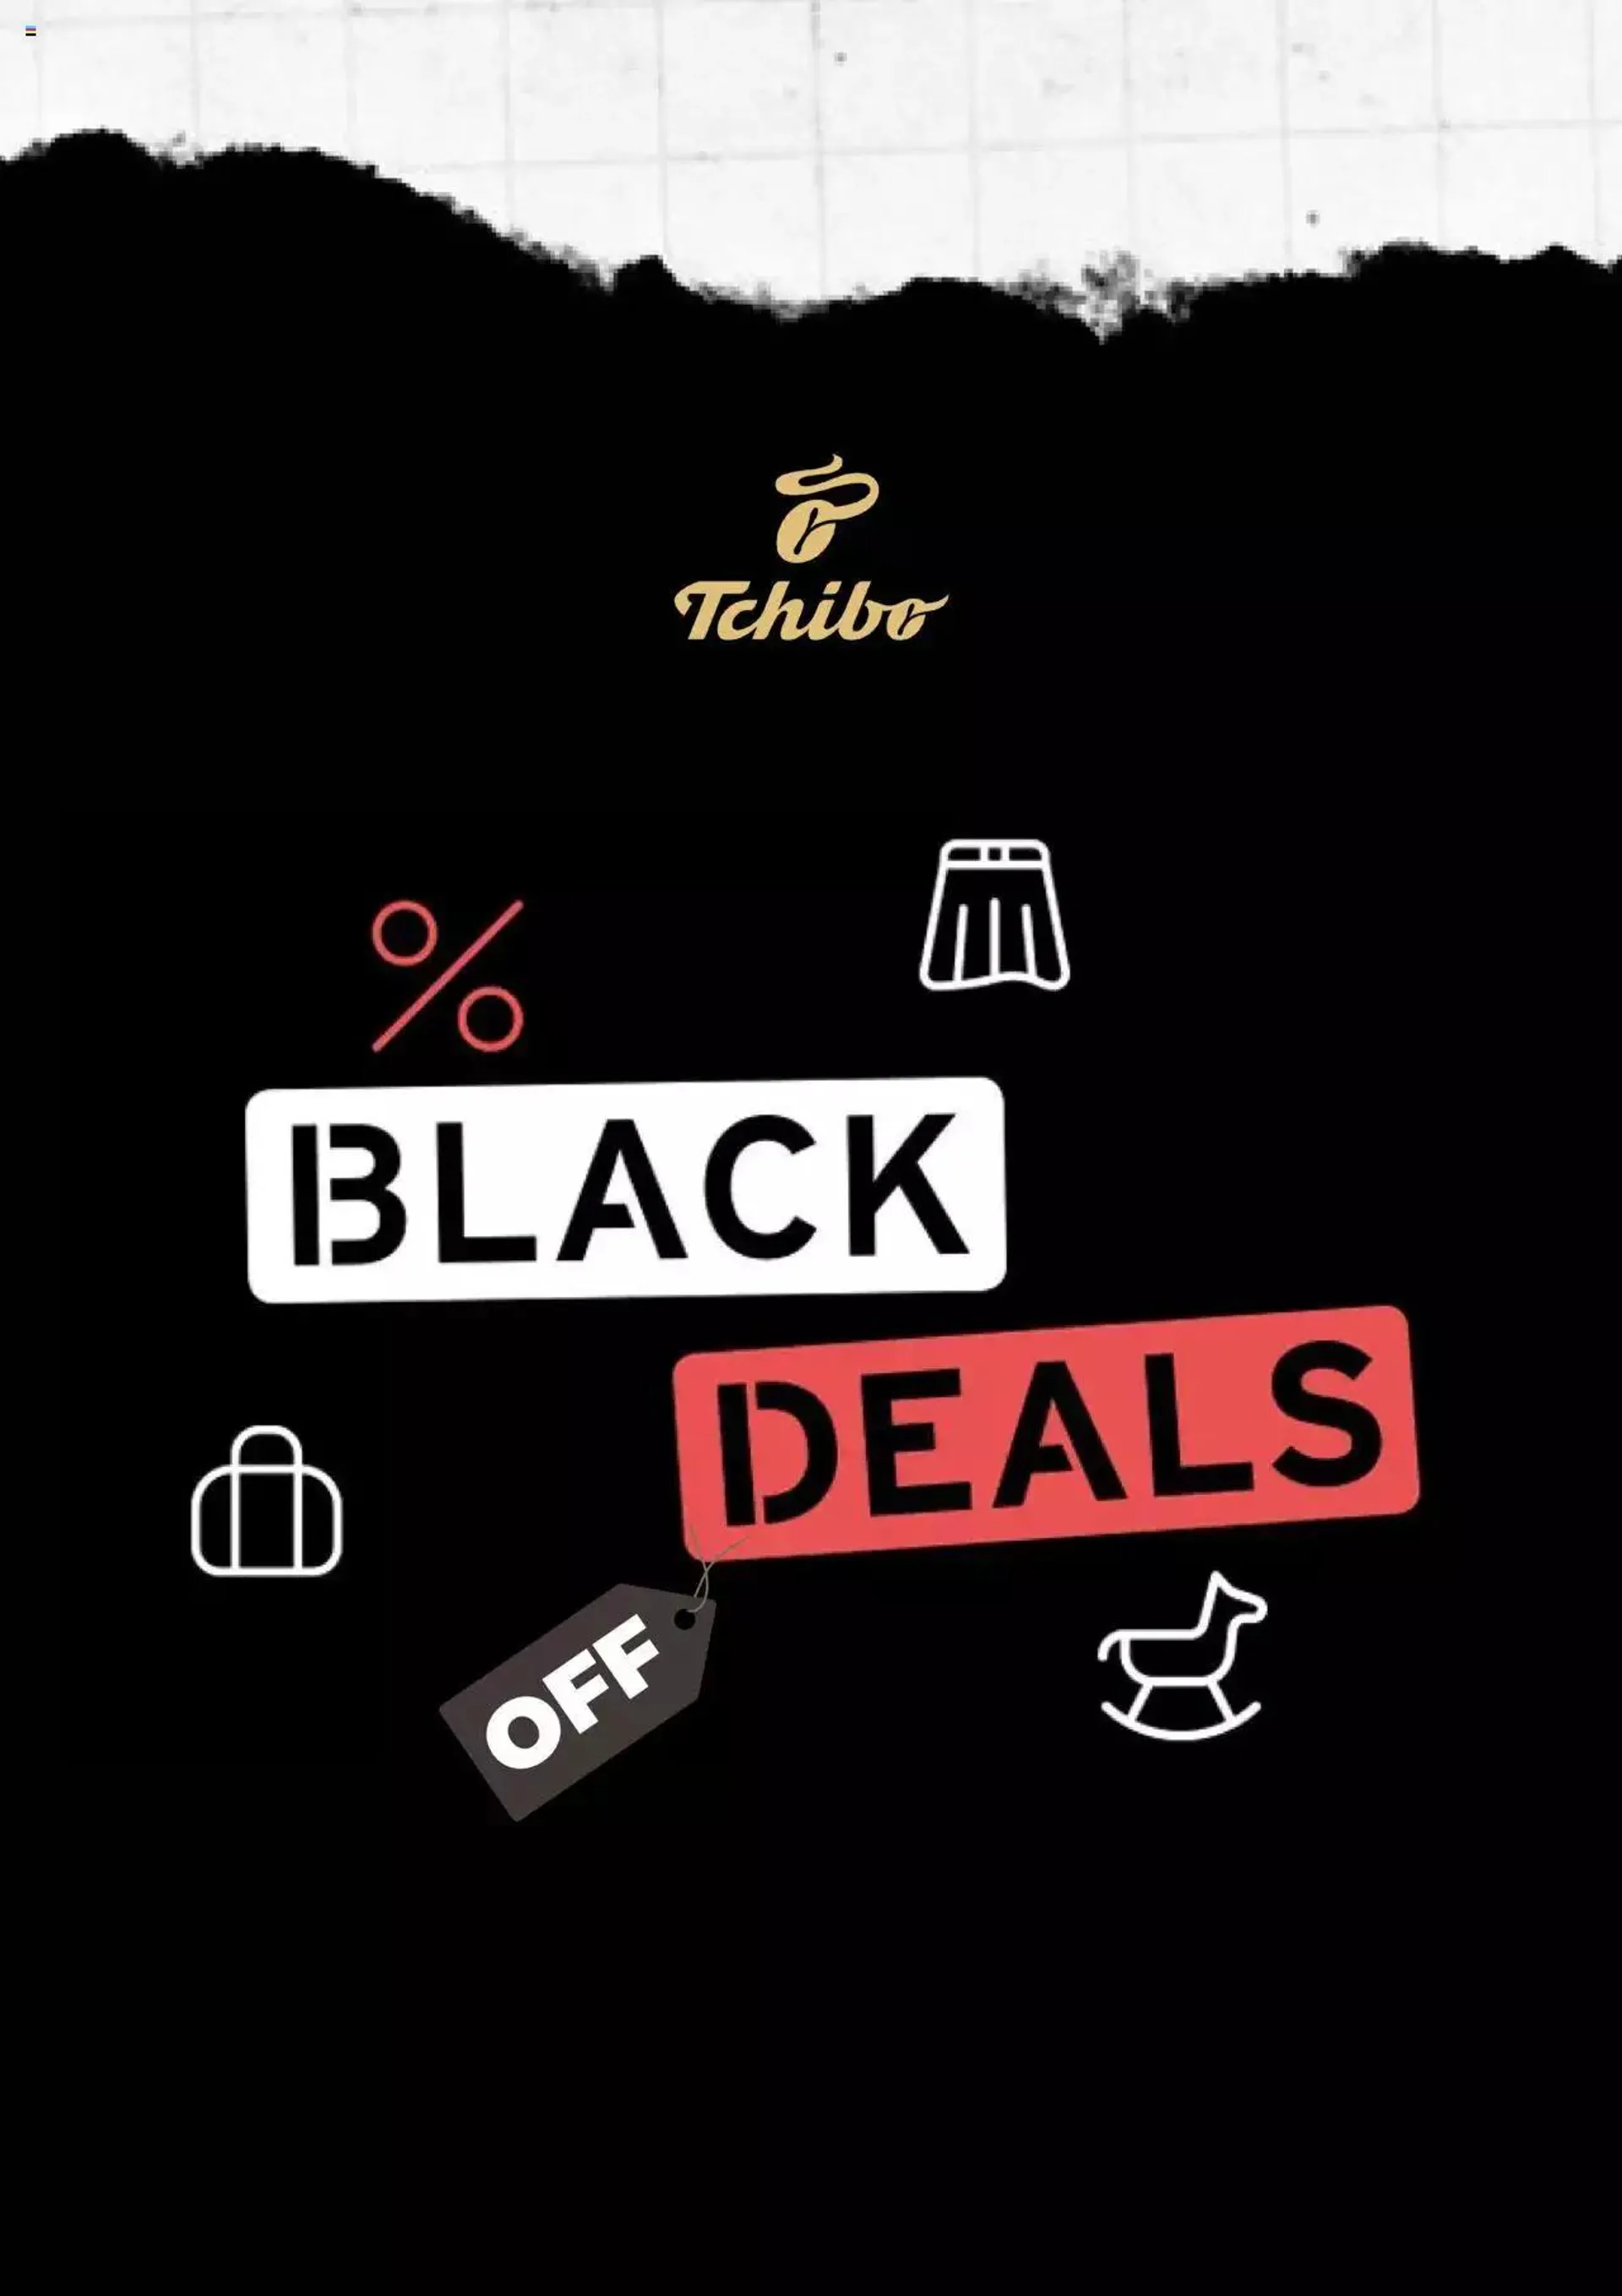 Tchibo - Black Deals - 0